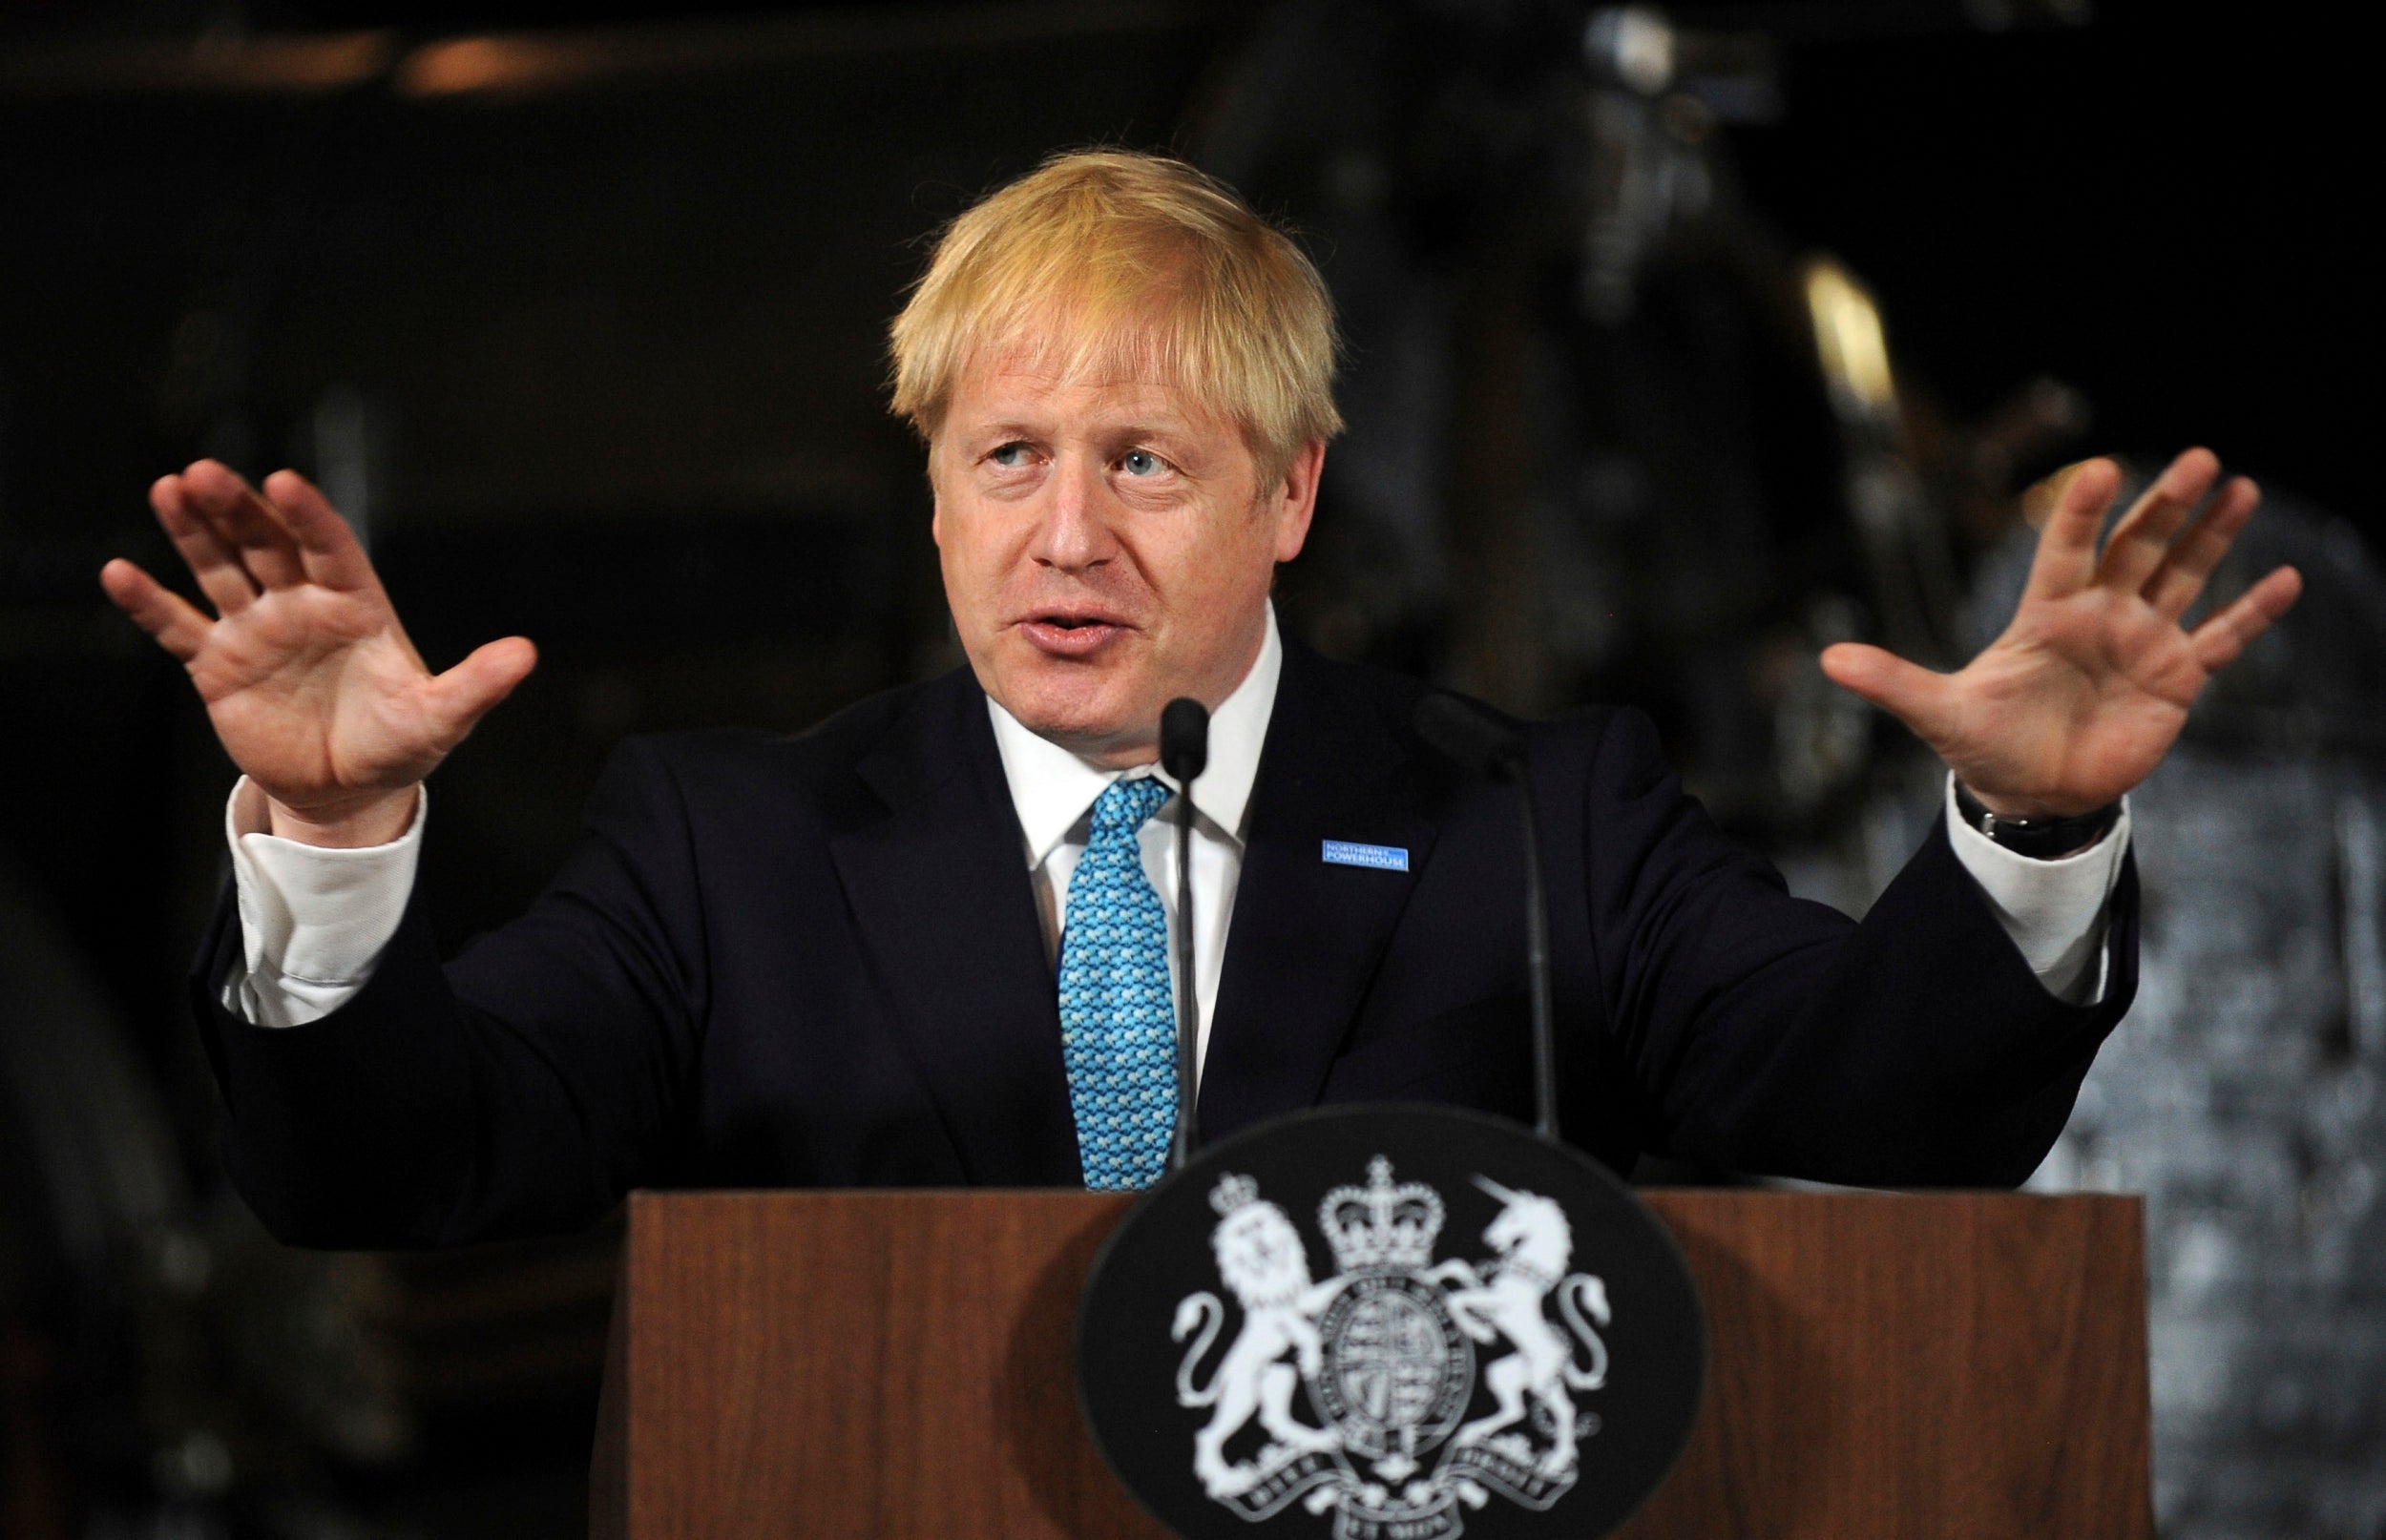 Mr Mohamed had called on Boris Johnson to intervene